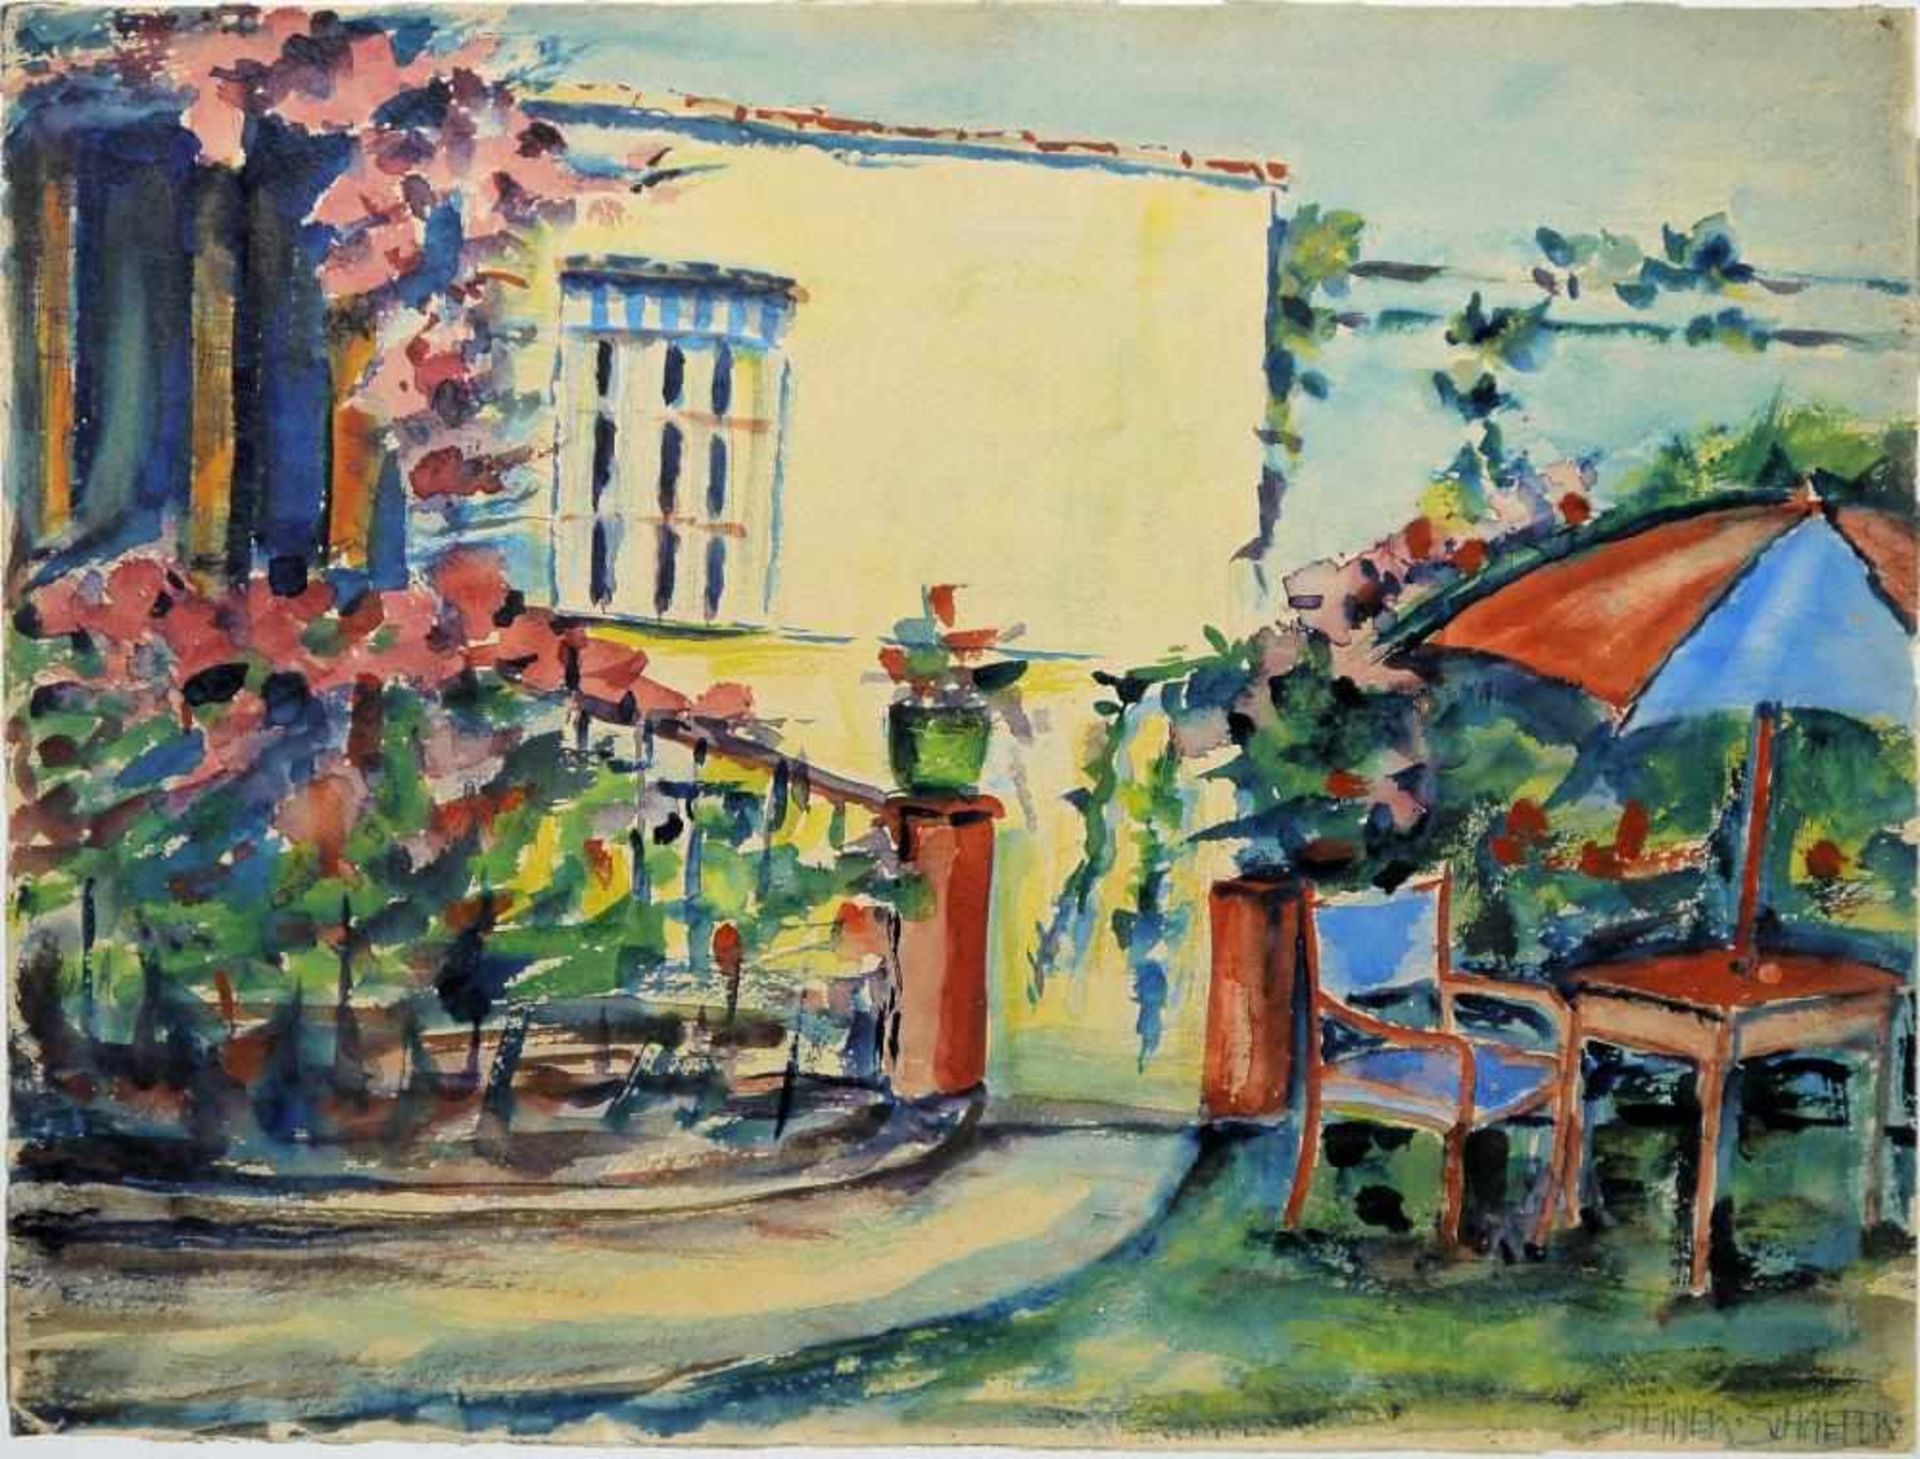 Gertrud Steiner-Schaefer, Haus mit Garten u. Haus mit Blumenschmuck, 2 Aquarelle, um 1950, gerahmt - Bild 2 aus 4